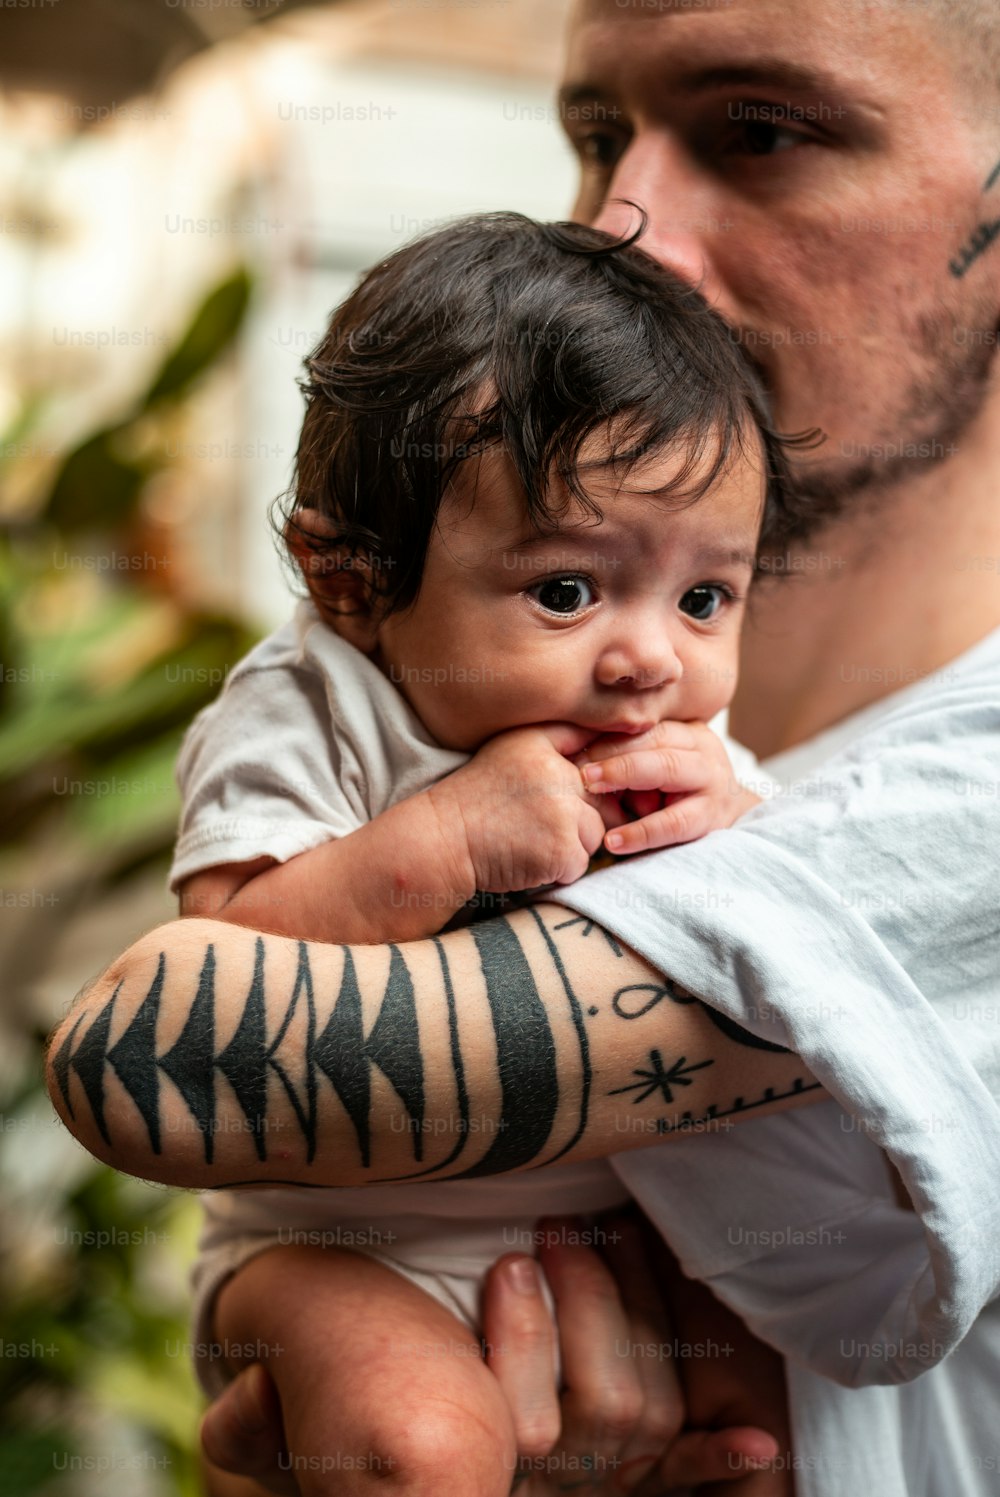 Un hombre sosteniendo a un bebé con un tatuaje en el brazo